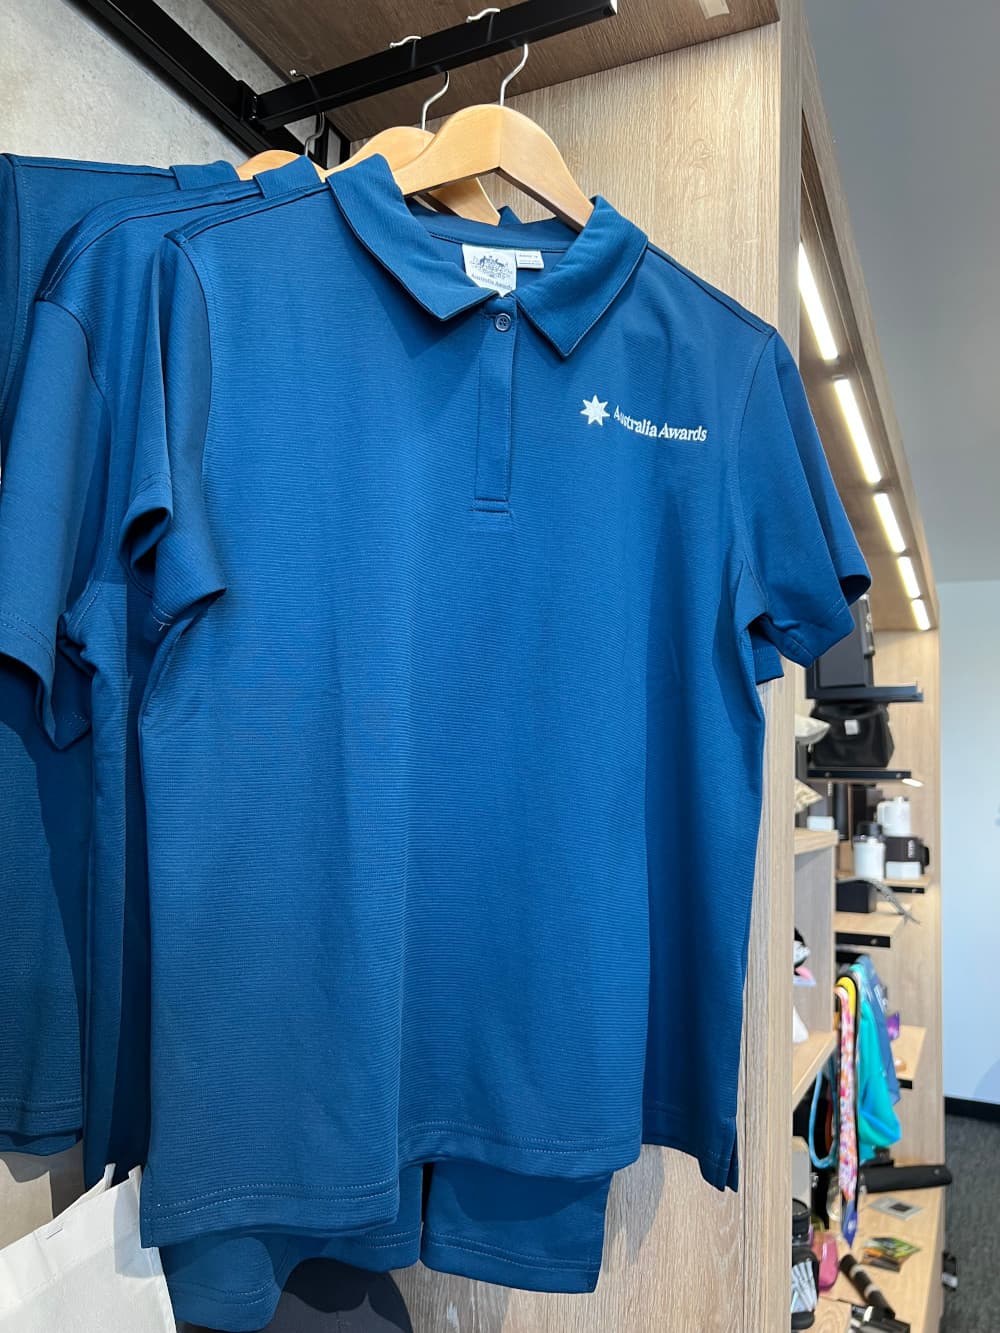 branded blue shirt promotional item